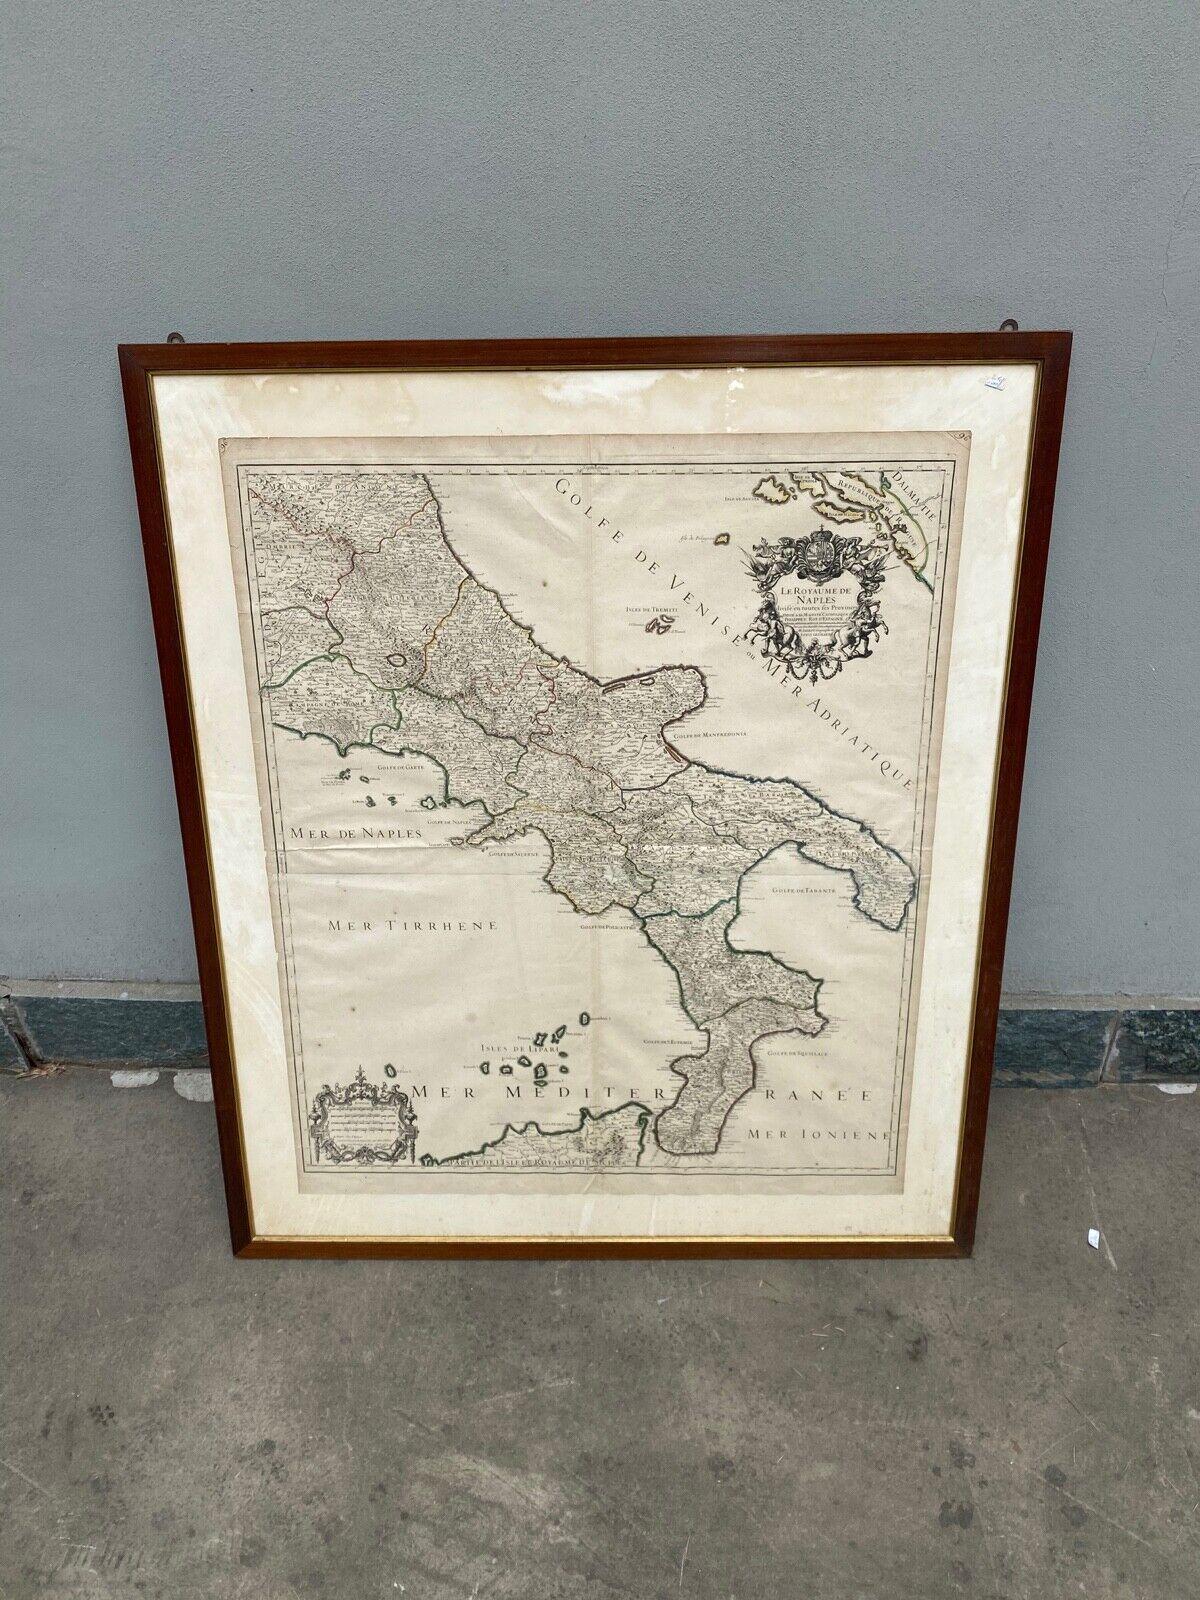 Antica Cartina Regno di Napoli XVIII Secolo 1:700000

Descrizione:
Meravigliosa Cartina con raffigurazione del regno di Napoli , la cartina è stata realizzata in Francia nella prima metà del XVIII secolo (1706).
La Cartina è in ottime condizioni